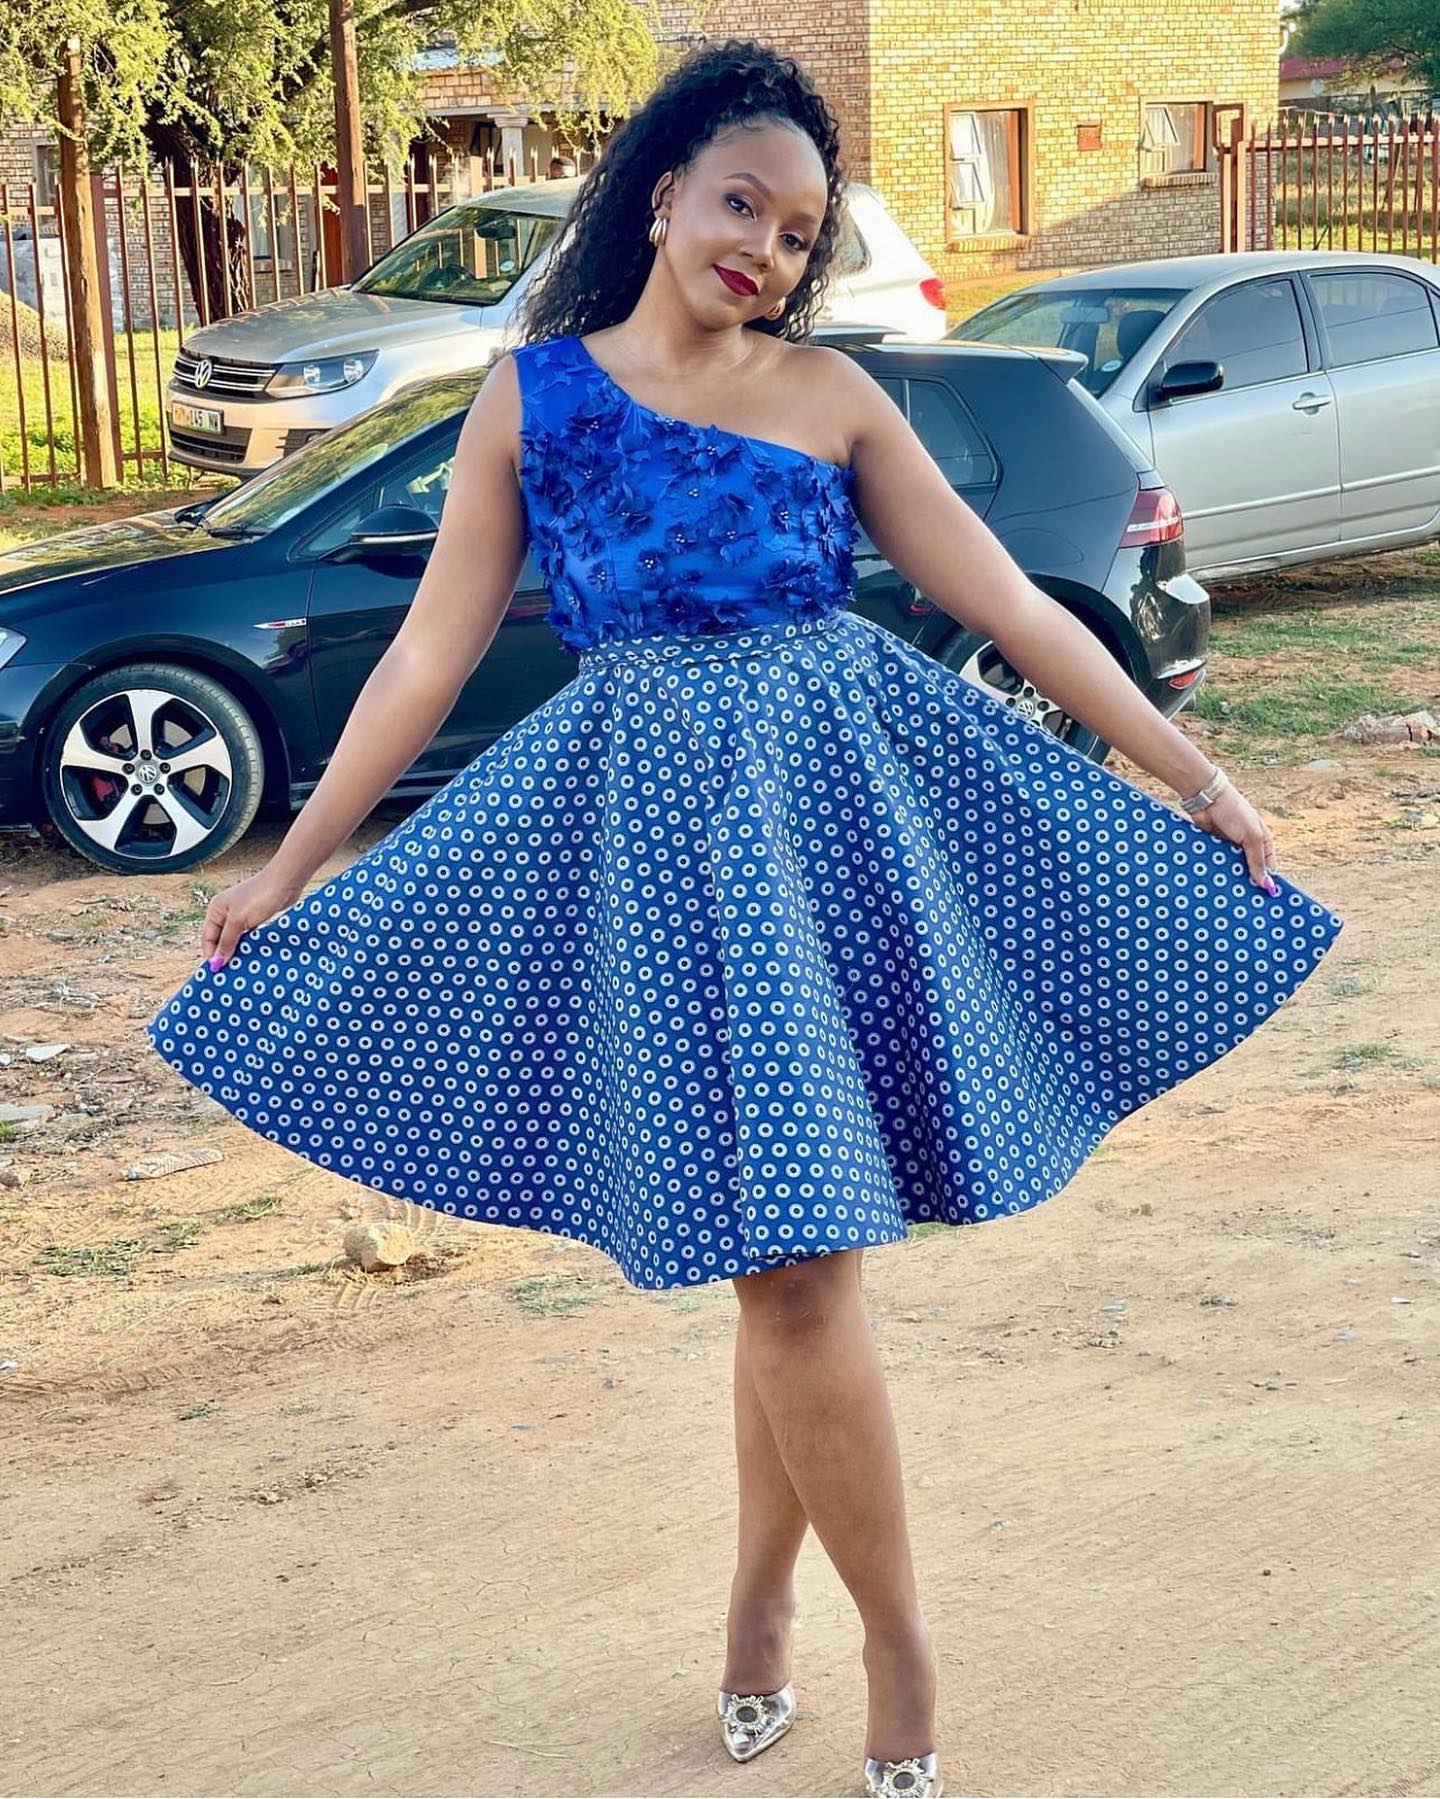 The Latest Trends in Shweshwe Dresses for Makoti